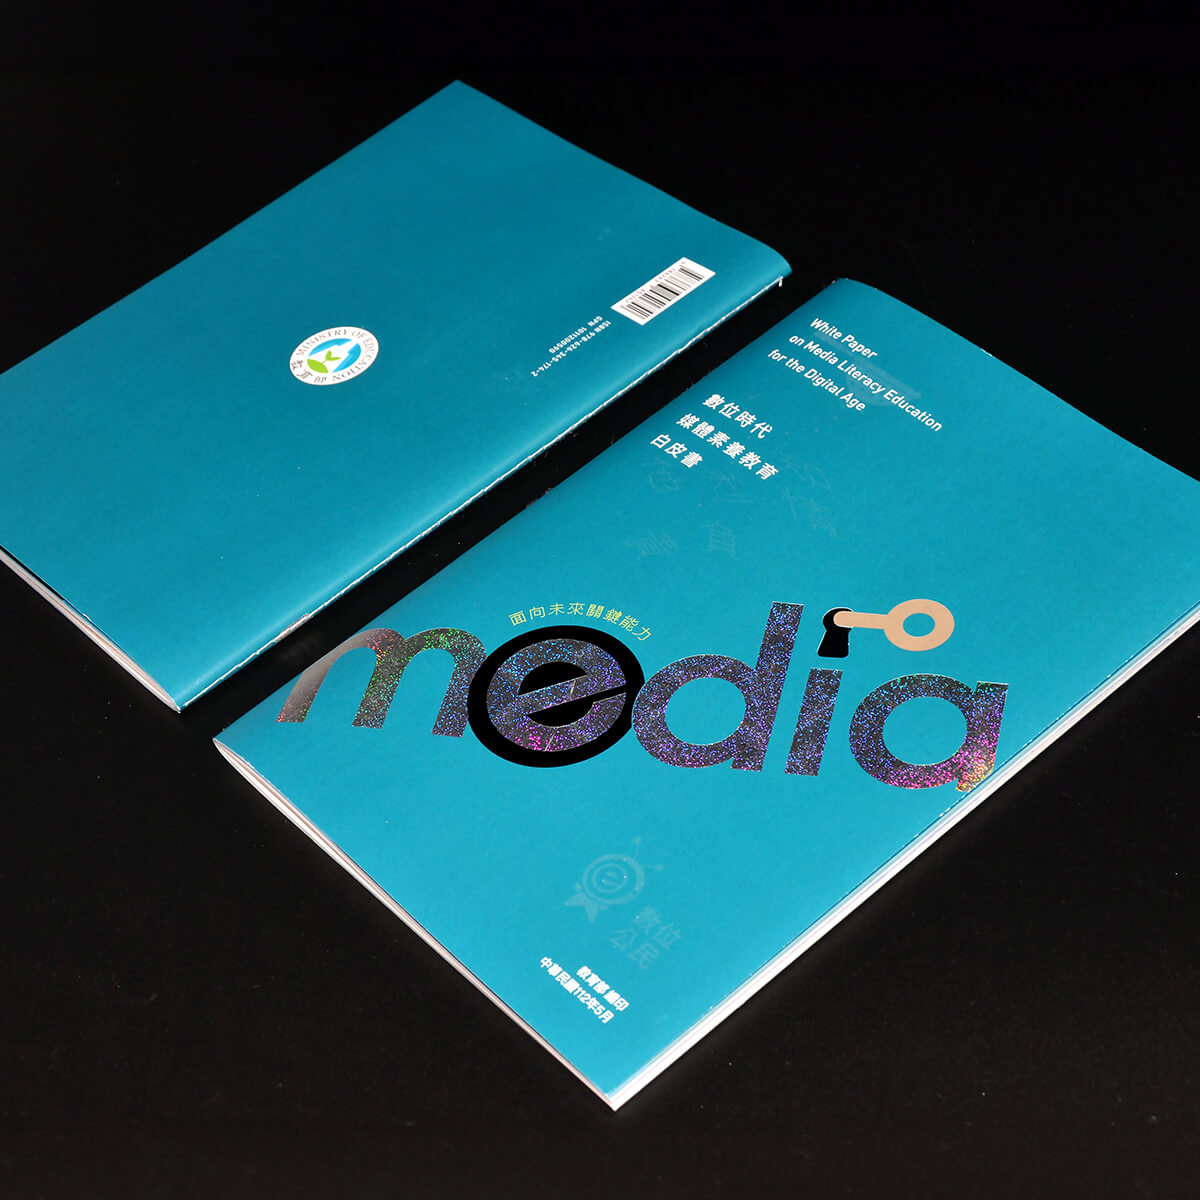 《數位時代媒體素養教育白皮書》手冊裝幀設計